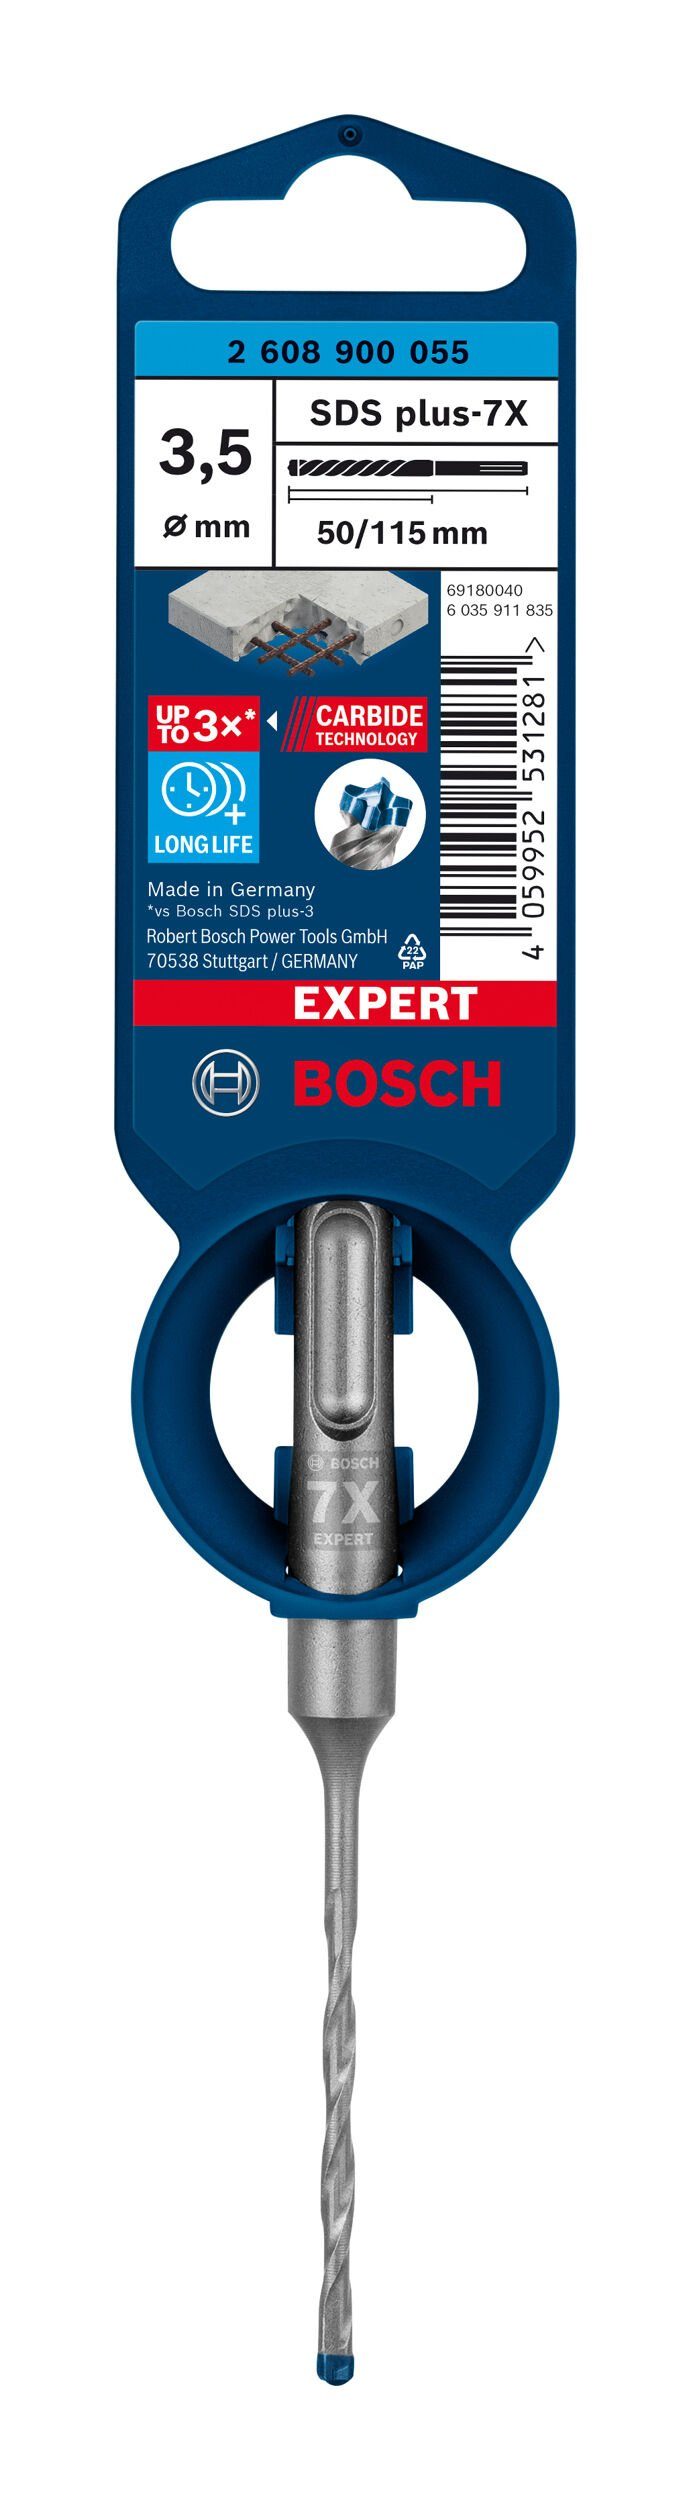 BOSCH Universalbohrer 50 x x 1er-Pack mm SDS - Expert plus-7X, 115 3,5 - Hammerbohrer